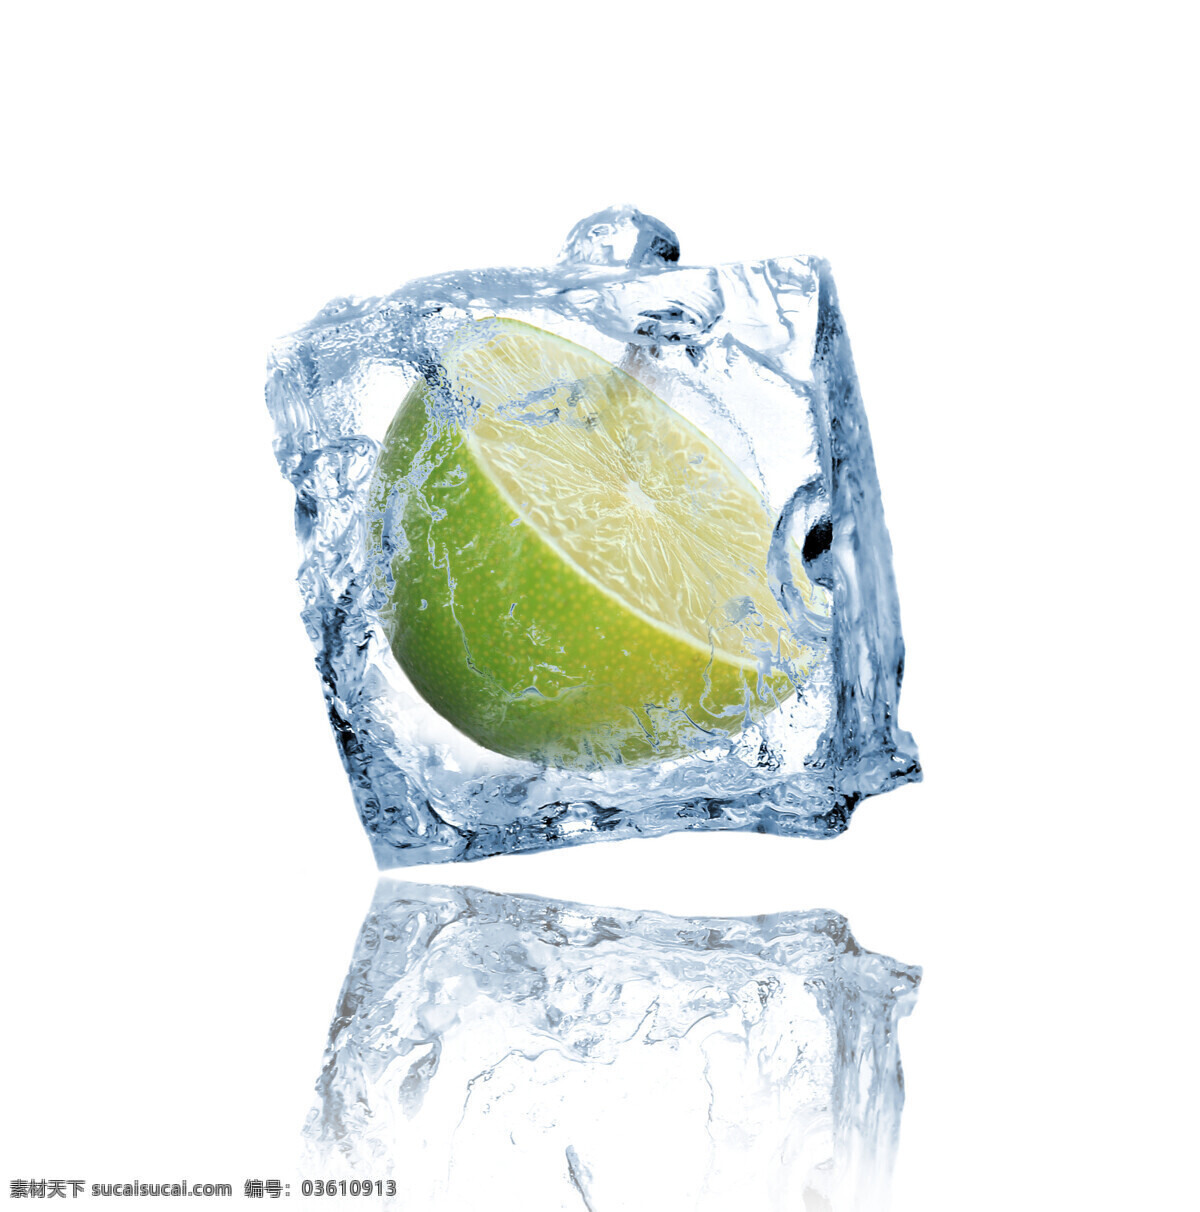 冰块 柠檬 青柠檬 生物世界 水滴 水果 水珠 冰 中 设计素材 模板下载 冰中柠檬 结冰 新鲜水果 psd源文件